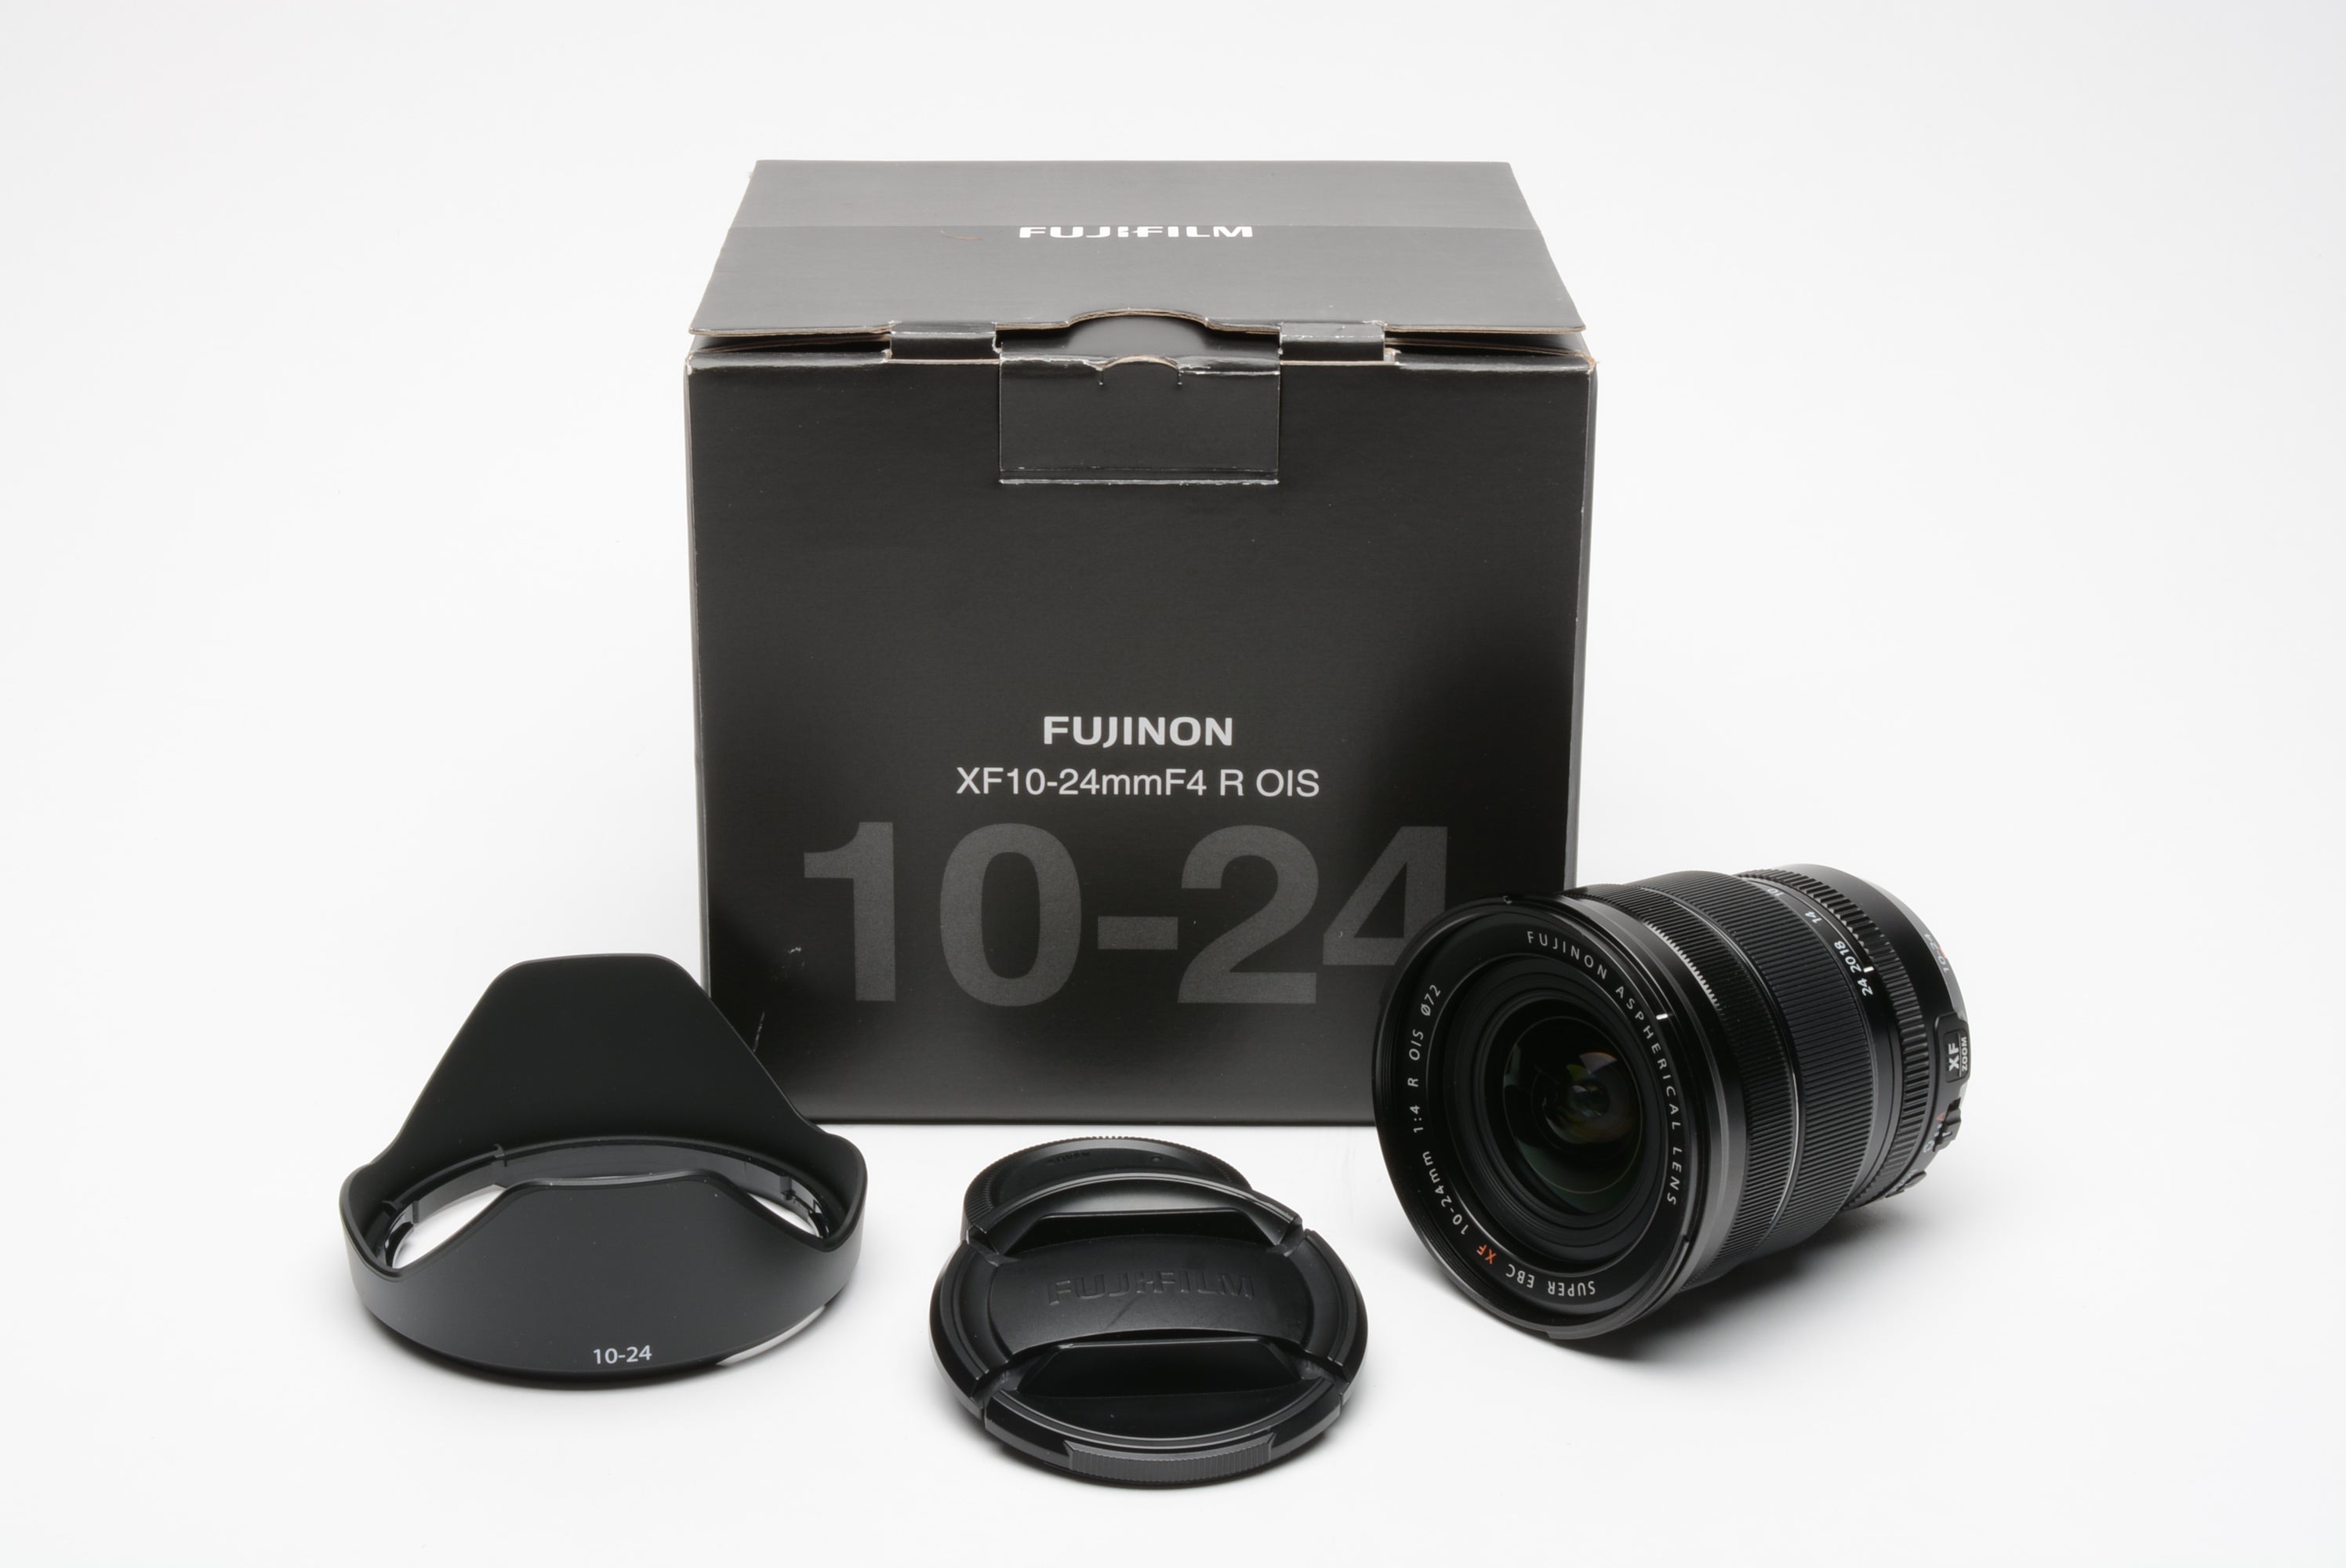 Fujifilm Fujinon XF 10-24mm F4 R OIS lens